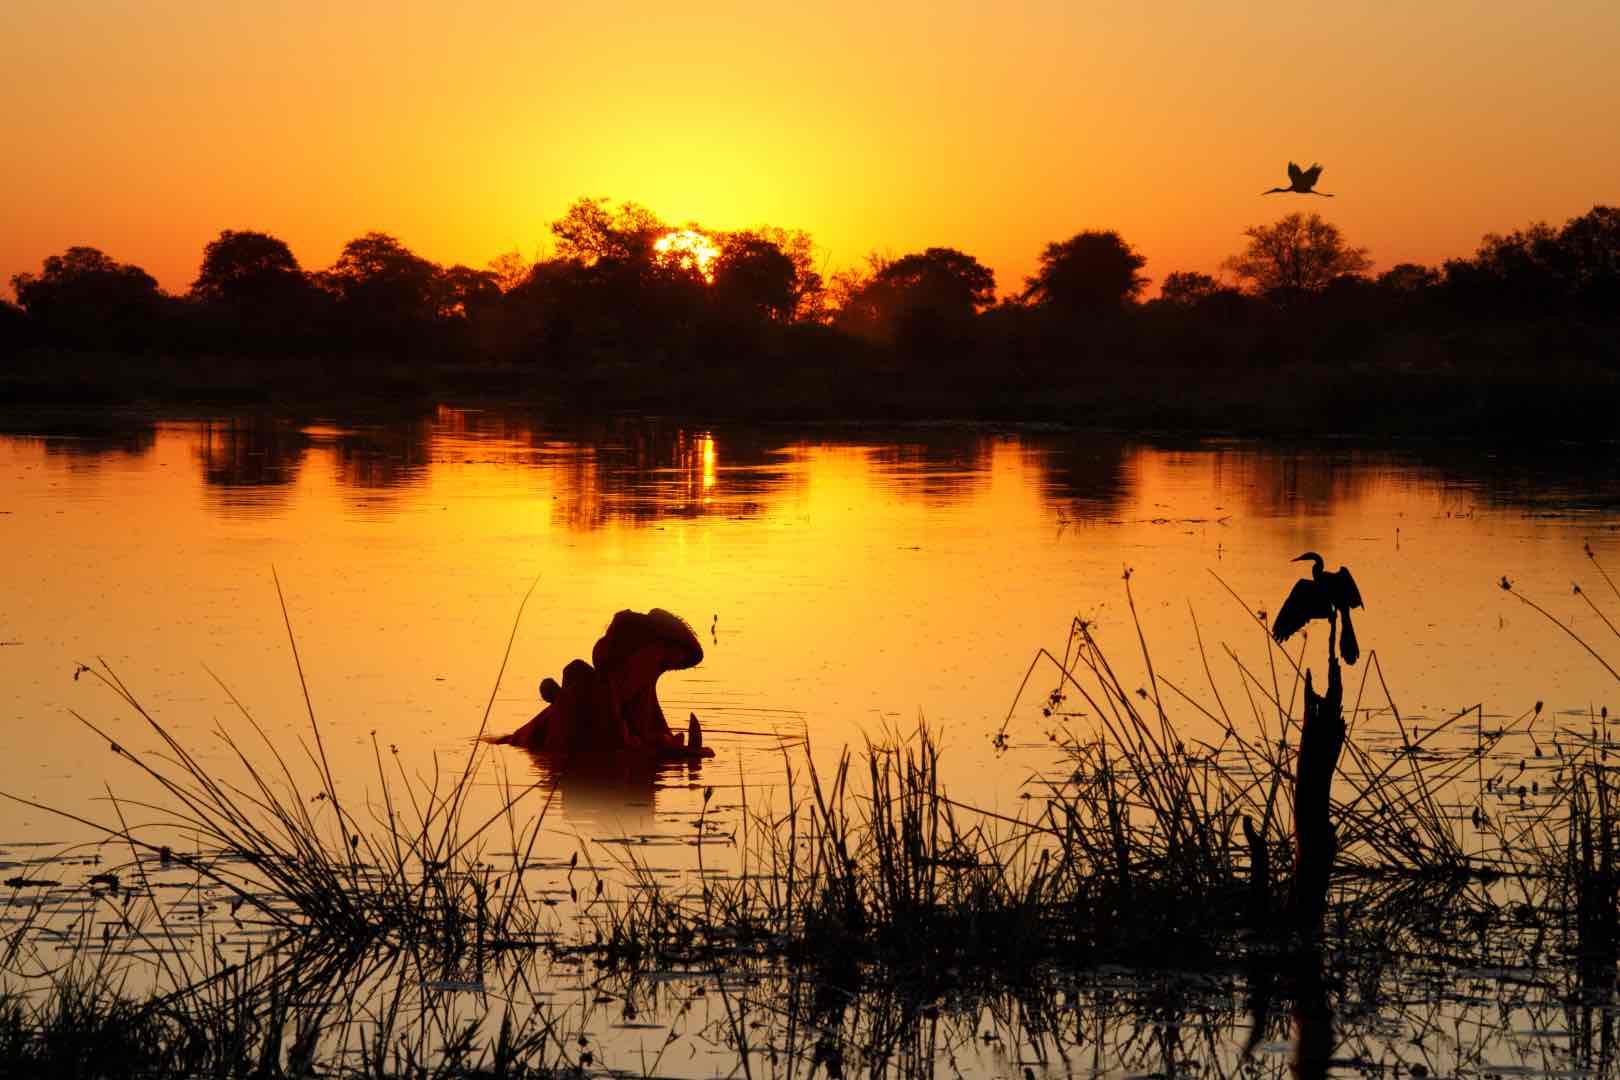 The Okavango